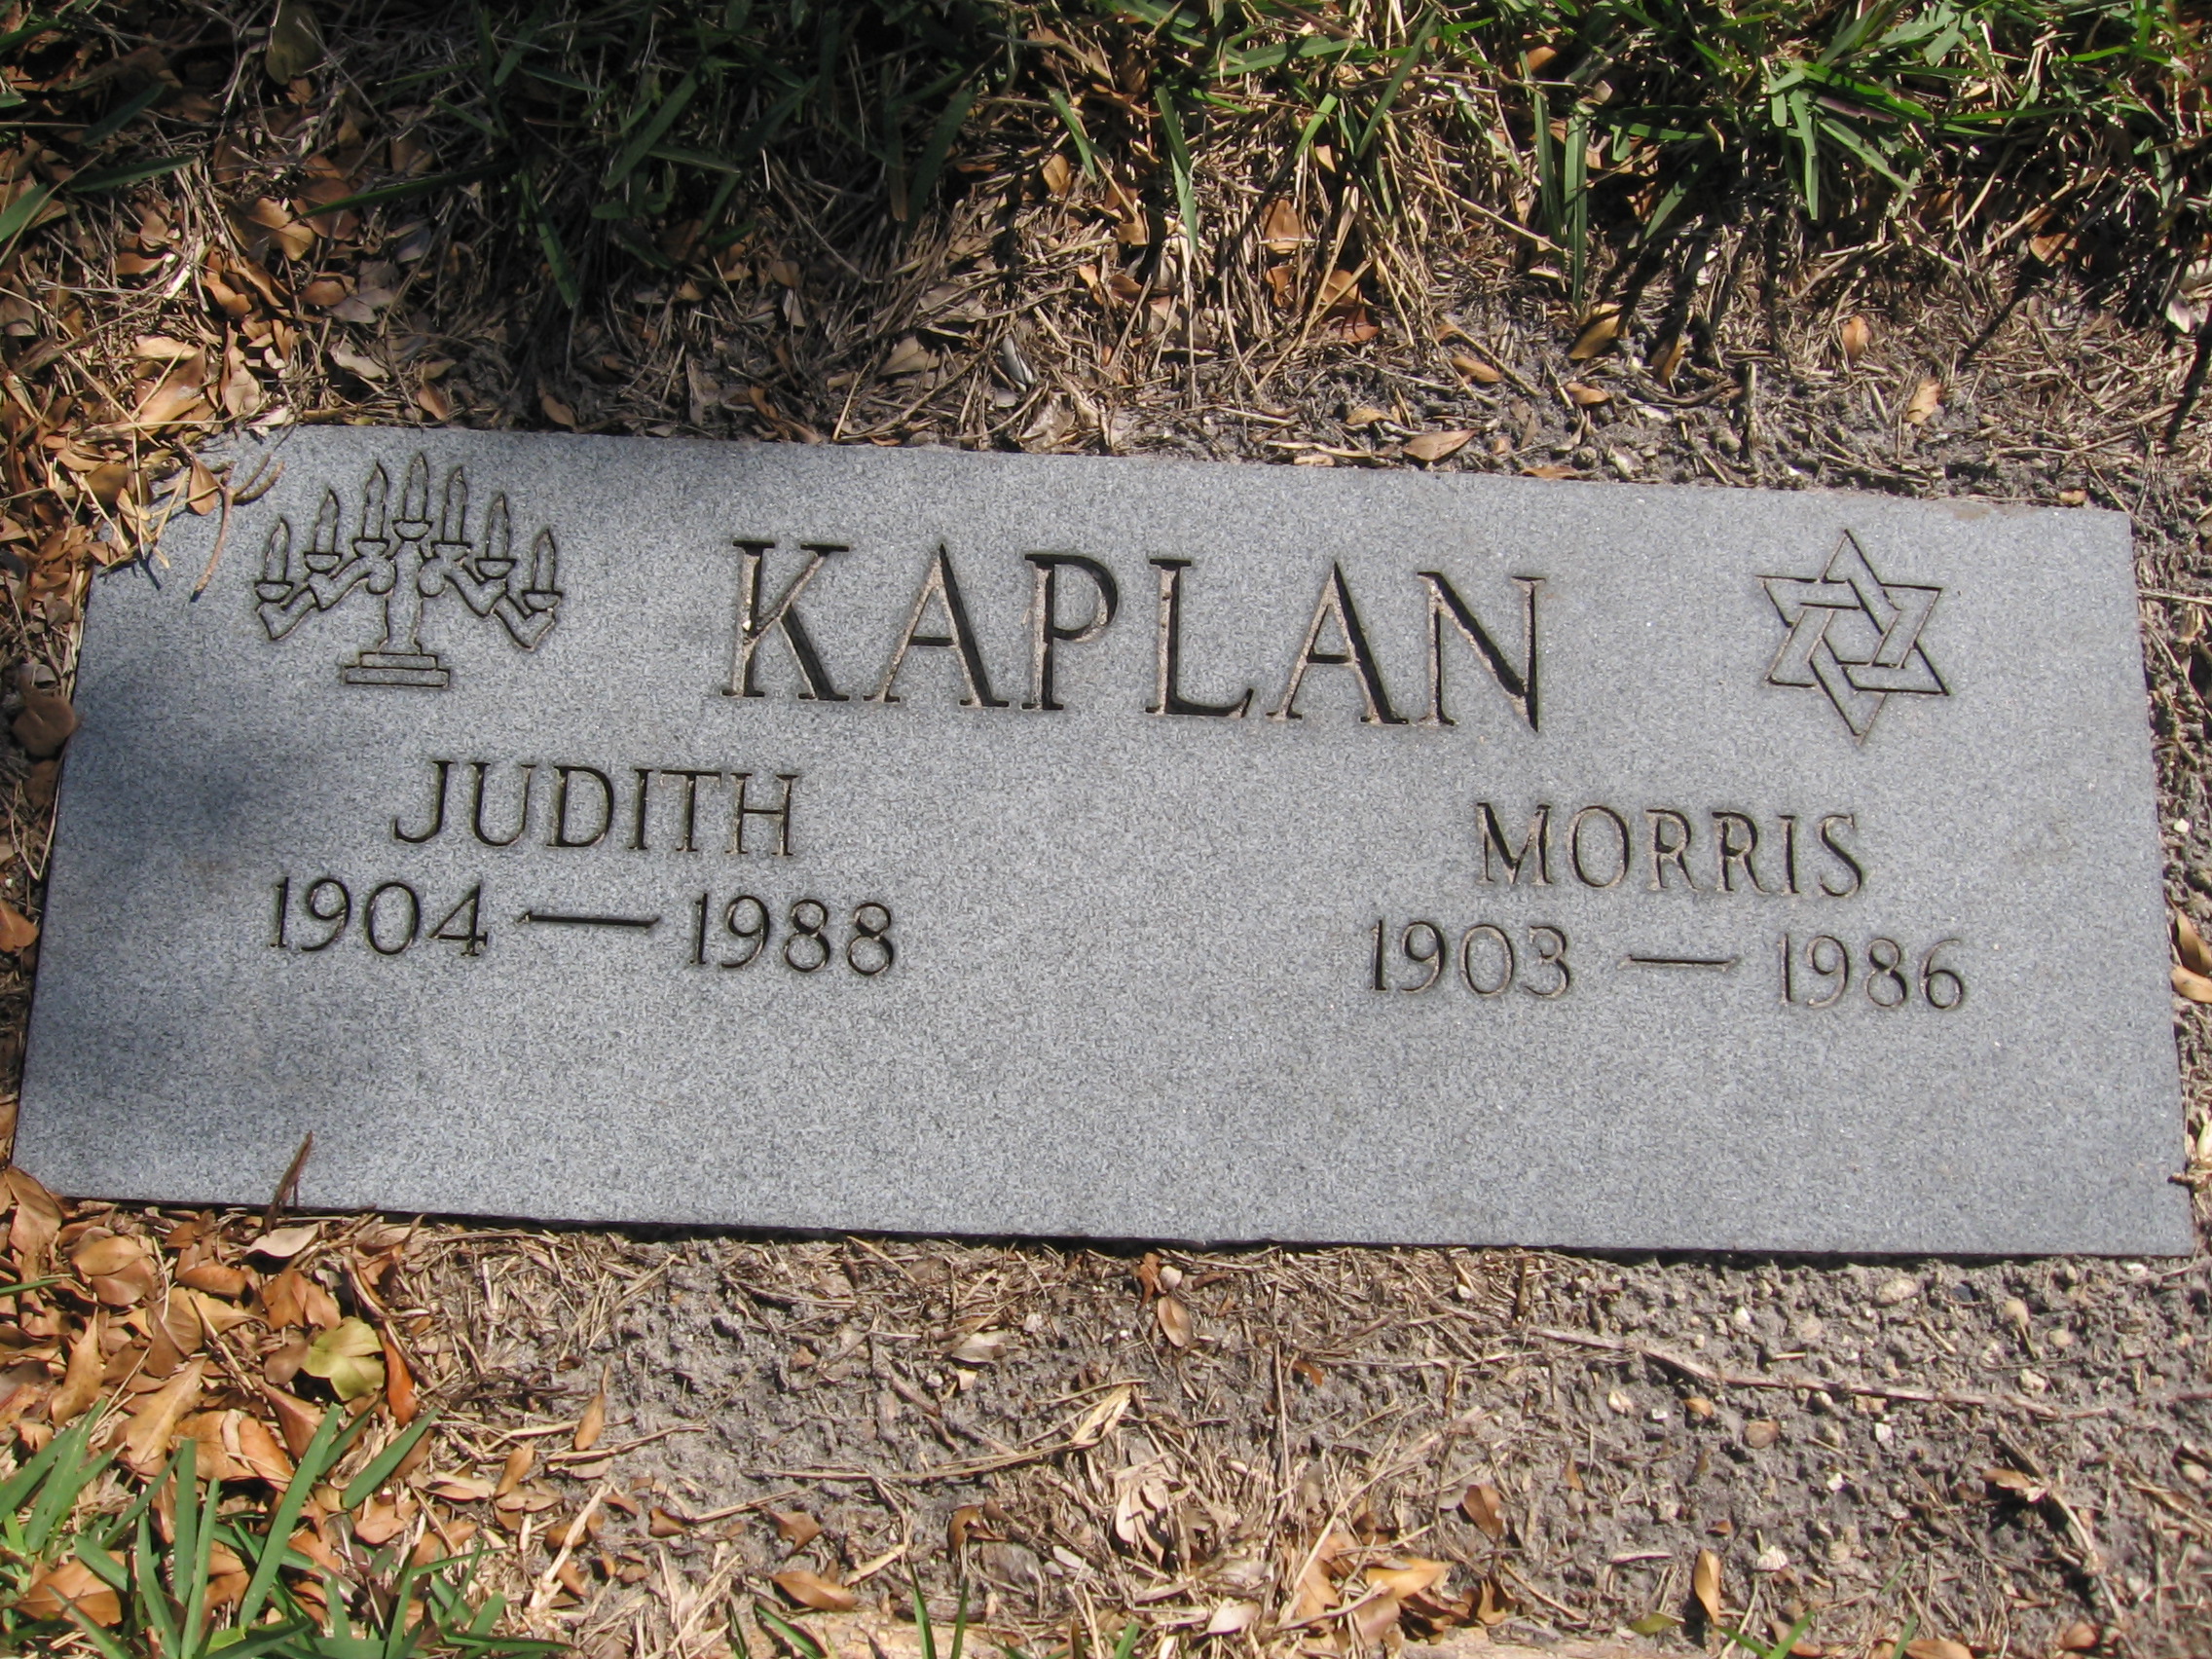 Judith Kaplan